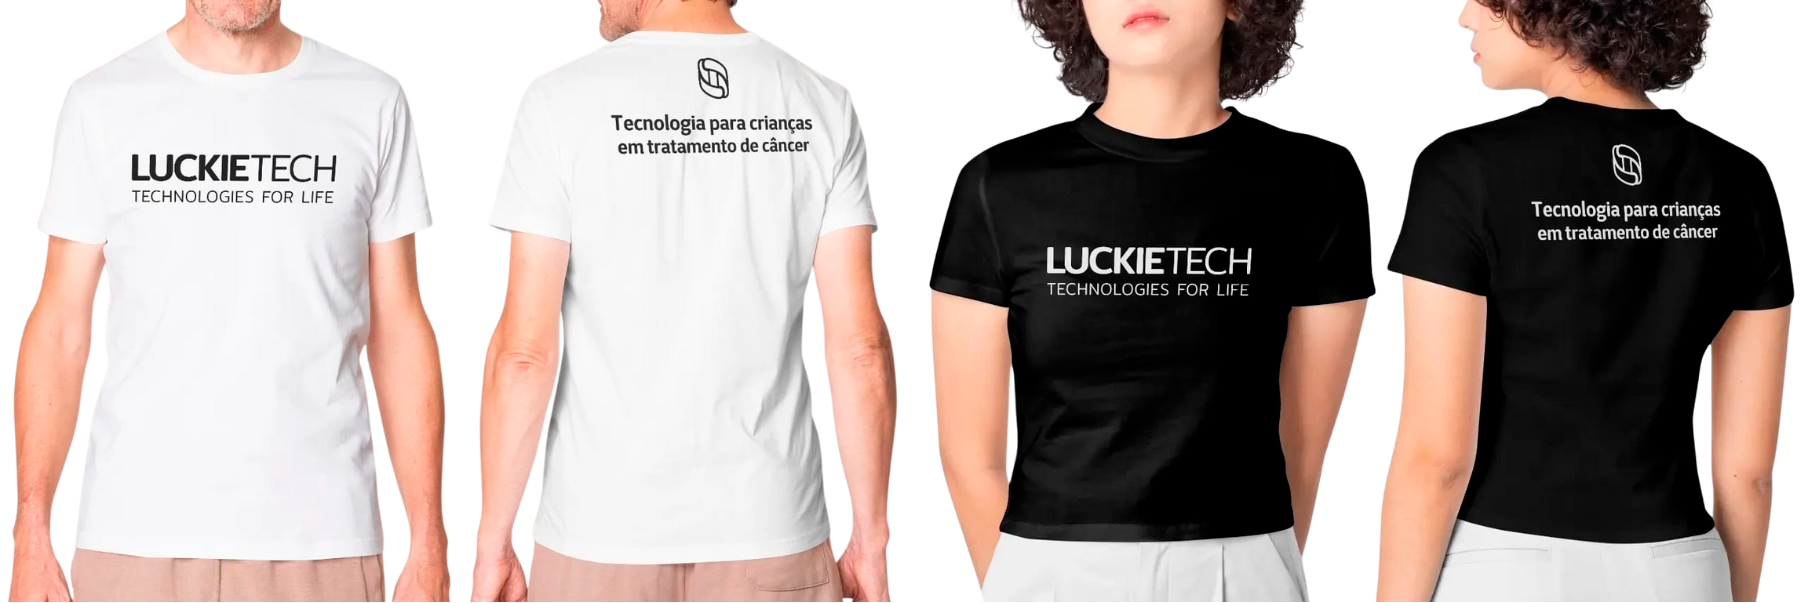 Camisetas Luckie Tech